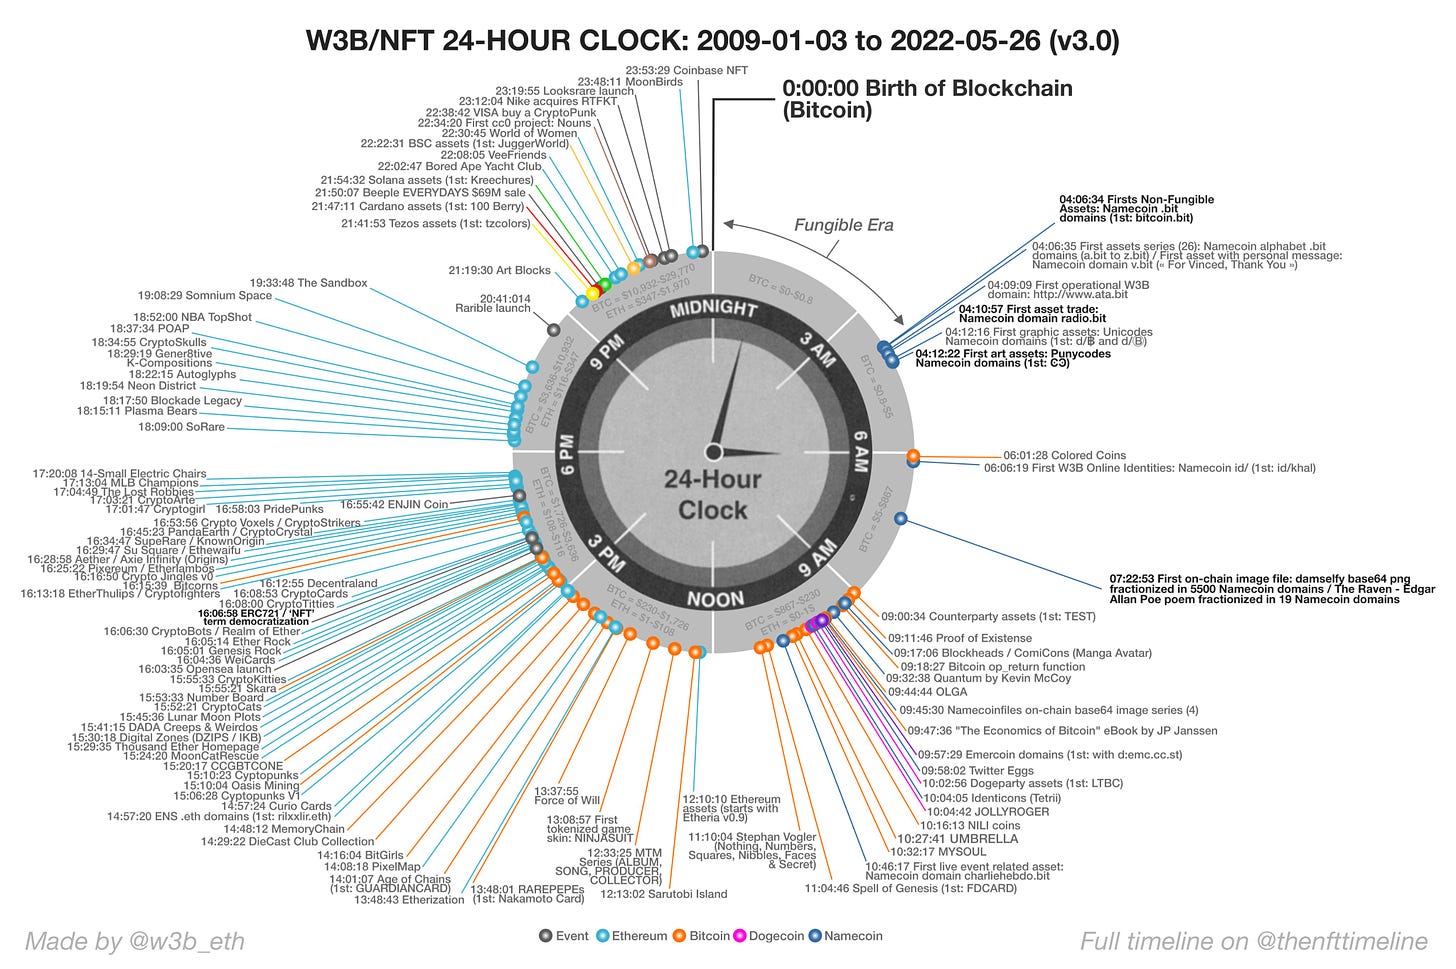 W3B/NFT 24-HOUR CLOCK: 2009 TO 2022